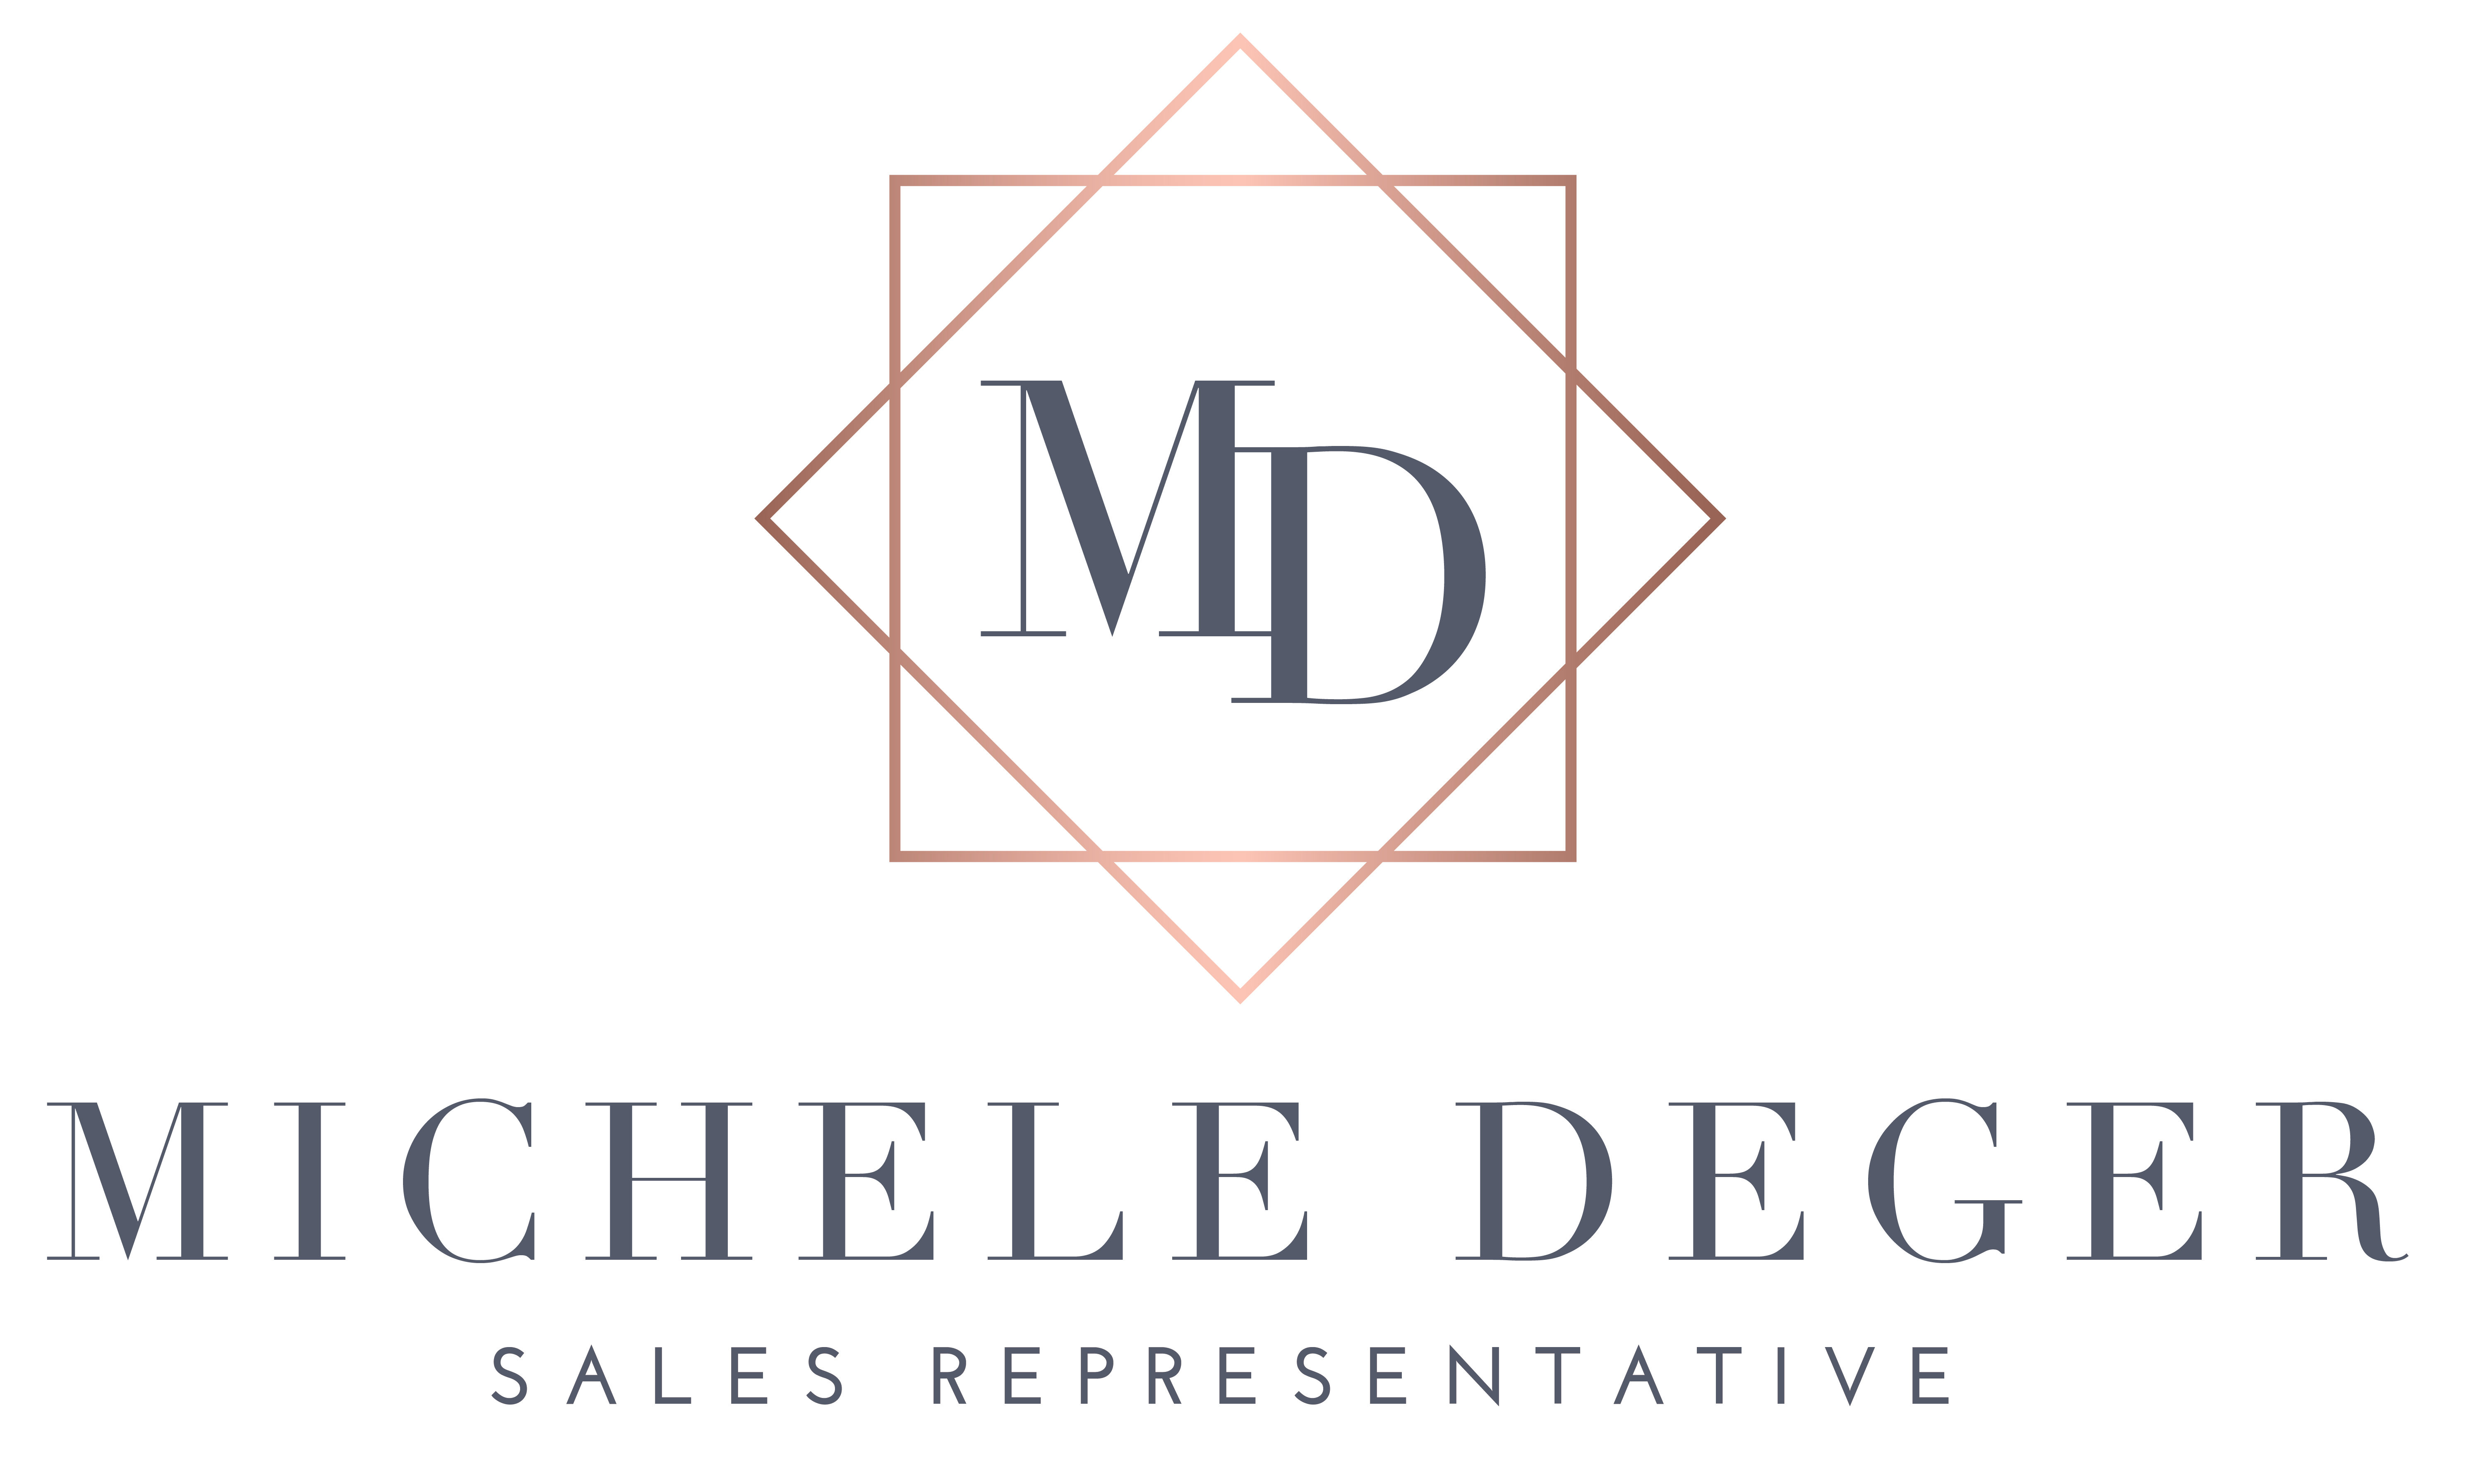 Michele Deger – Sales Representative